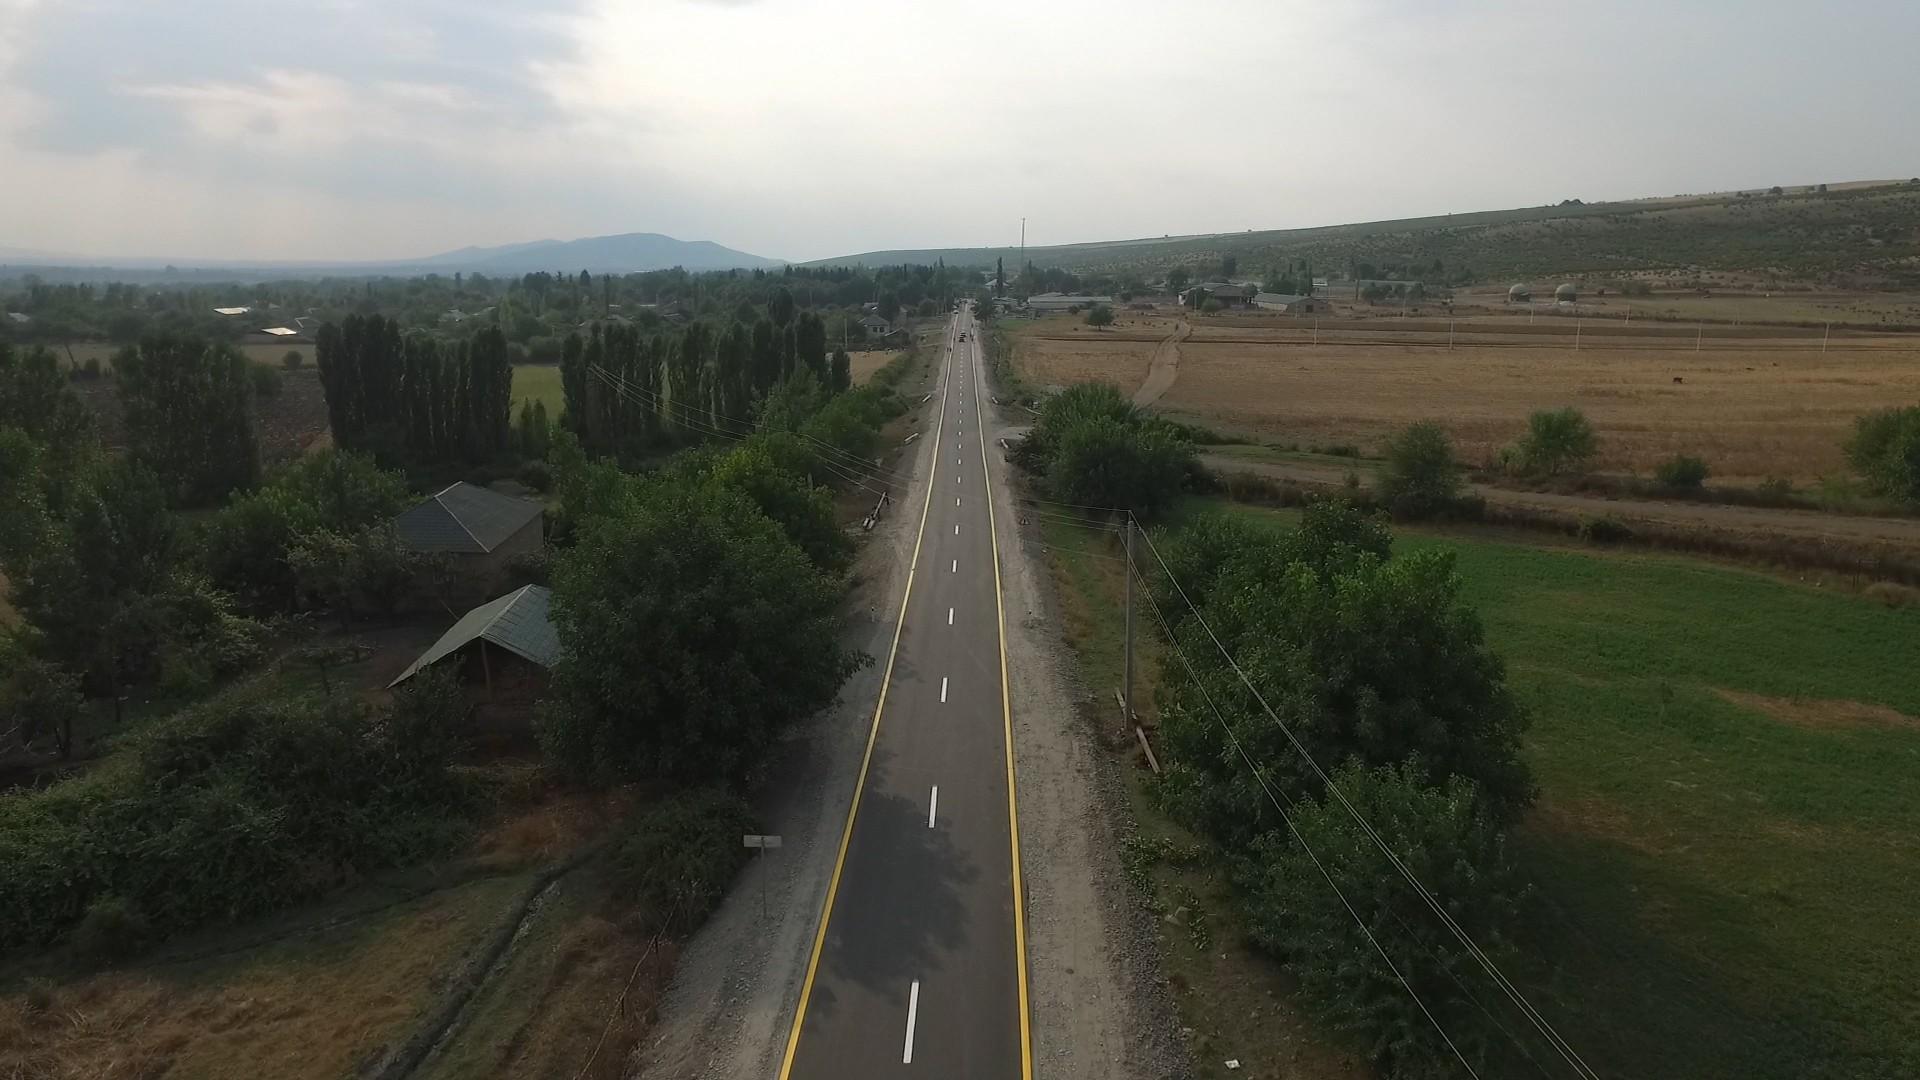 Qəbələdə 37 km uzunluğa malik 2 avtomobil yolu yenidən qurulub (FOTO)